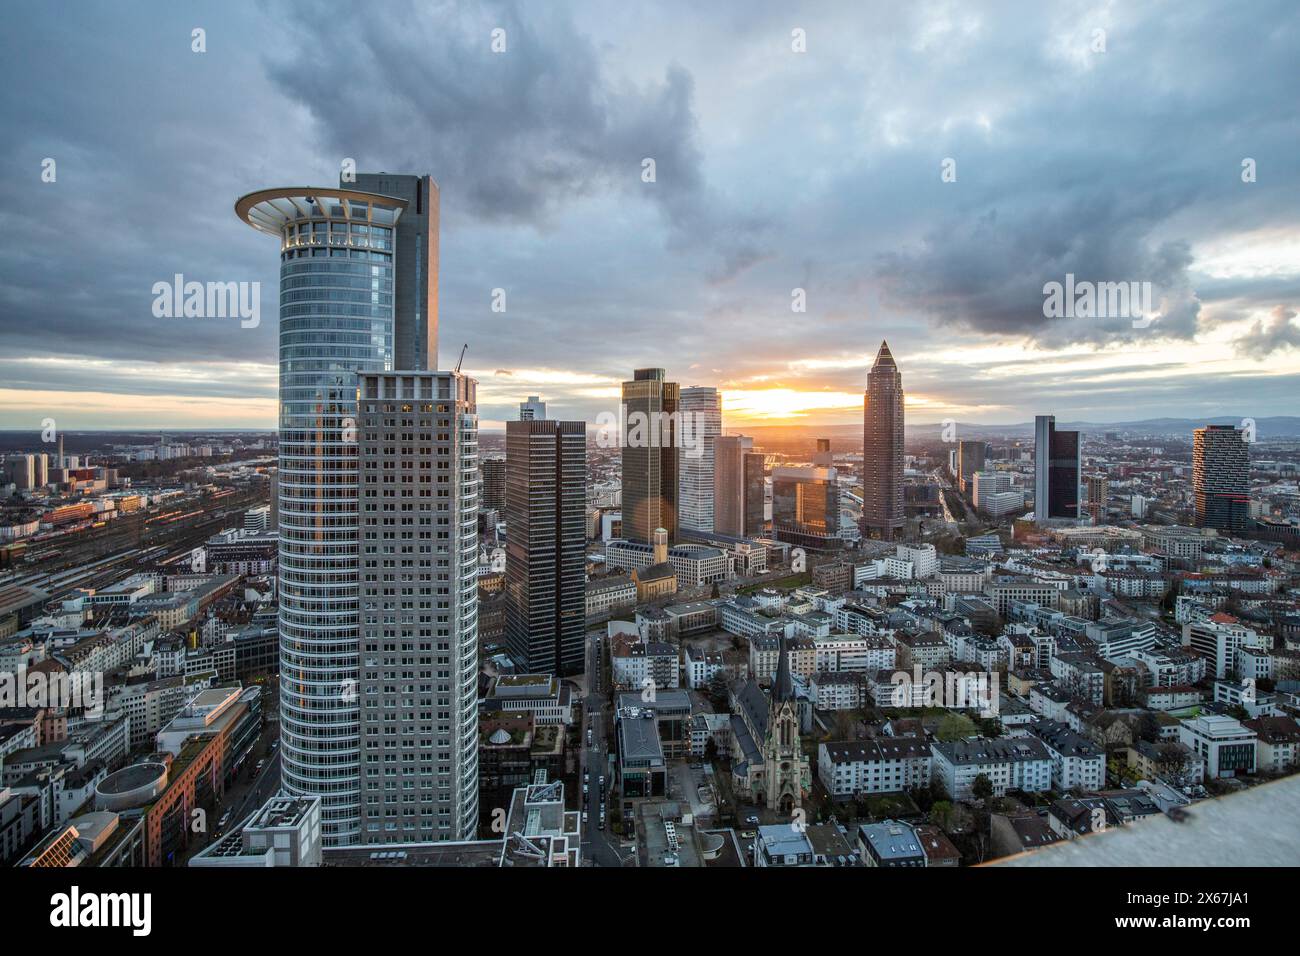 Blick auf die Skyline von einem Hochhaus am Abend. Fantastischer Blick über das Finanzzentrum bei Sonnenuntergang. Stadtfoto von Frankfurt am Main, Hessen, Deutschland Stockfoto